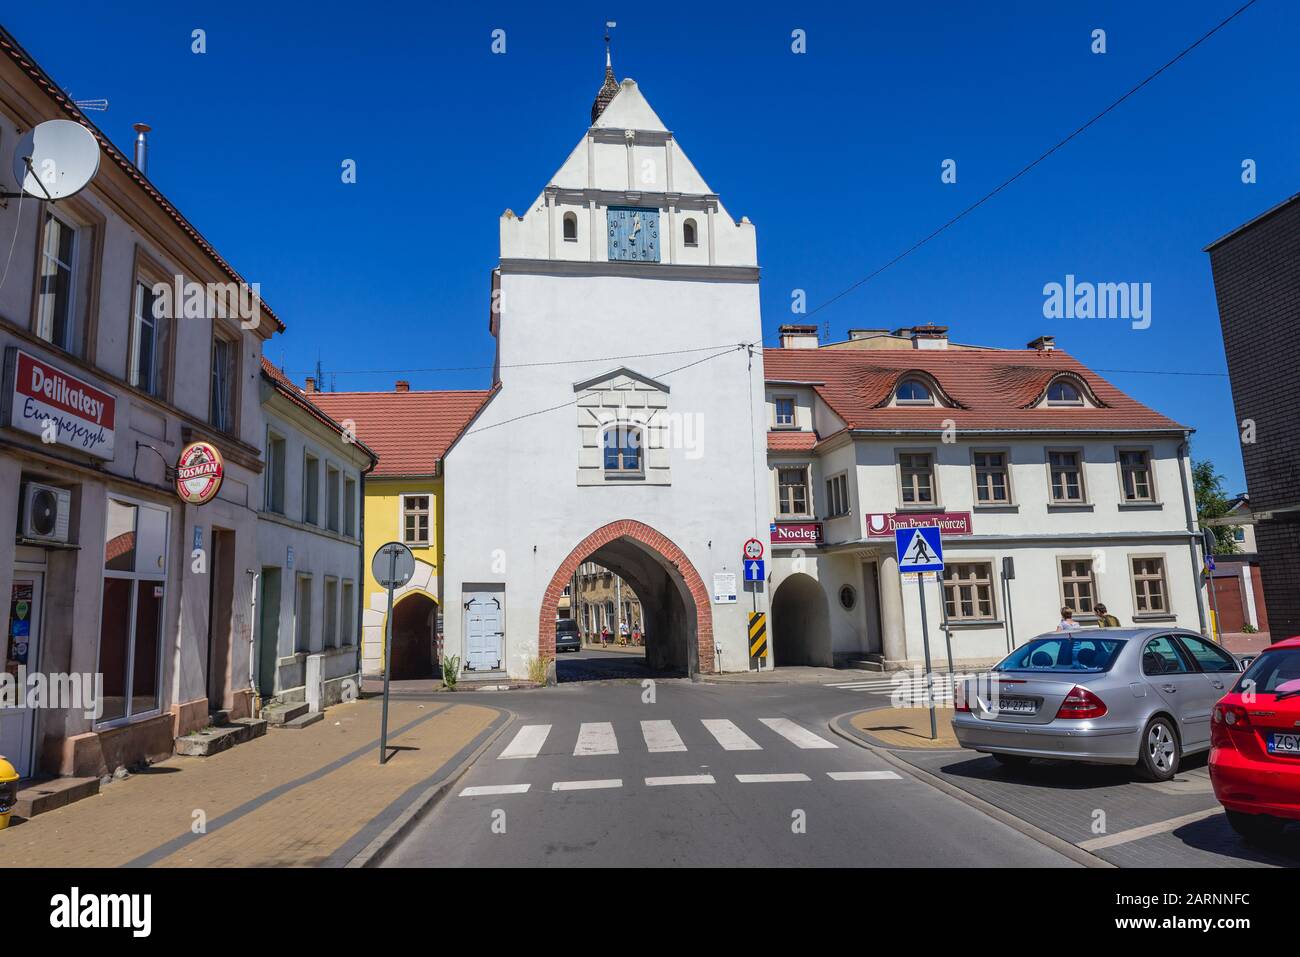 Medievale Brama Kamienna - porta di pietra a Gryfice, capitale della contea di Gryfice in Voivodato Pomeraniano occidentale della Polonia Foto Stock